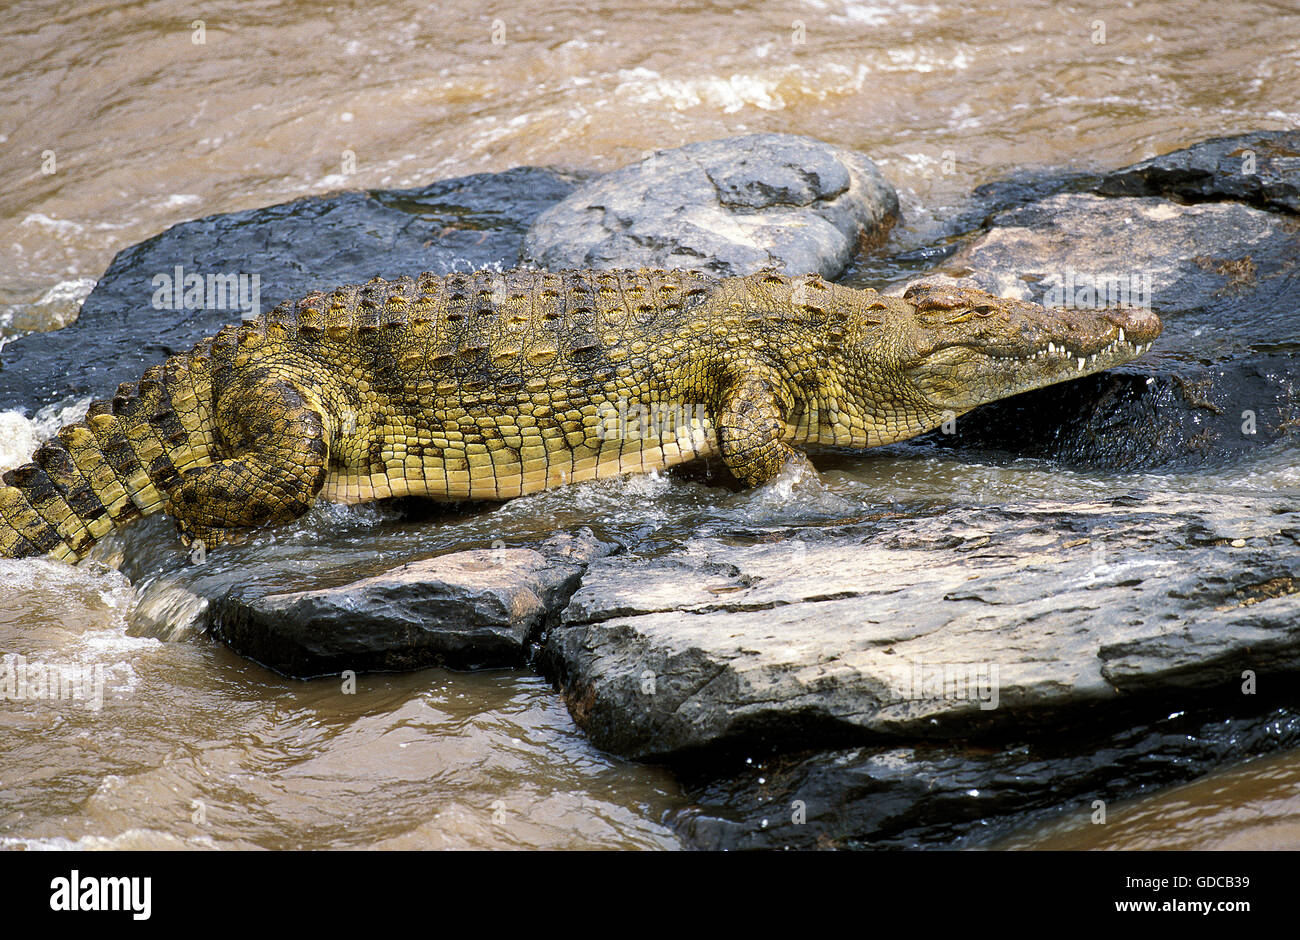 El cocodrilo del Nilo, Crocodylus niloticus, adulto en las rocas, el parque de Masai Mara en Kenya Foto de stock